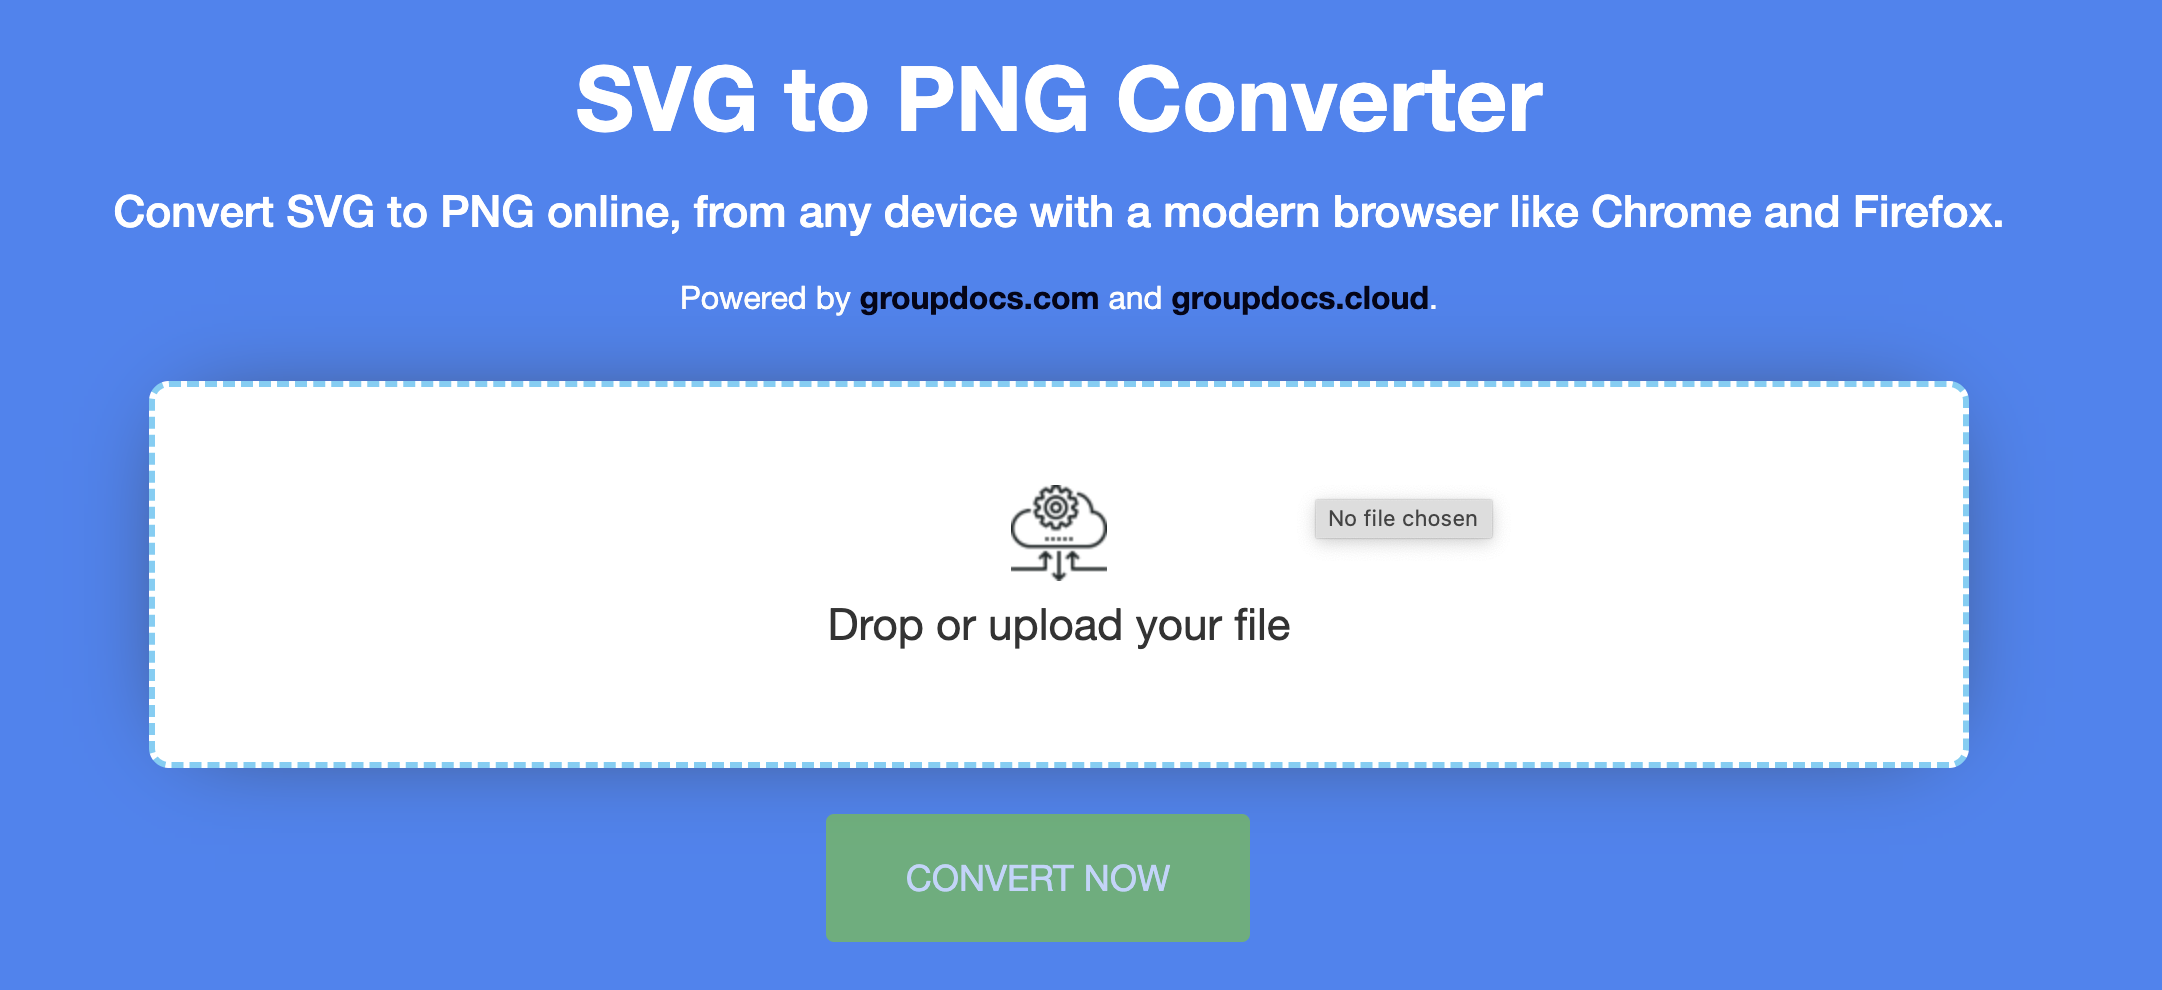 mengonversi SVG ke PNG daring